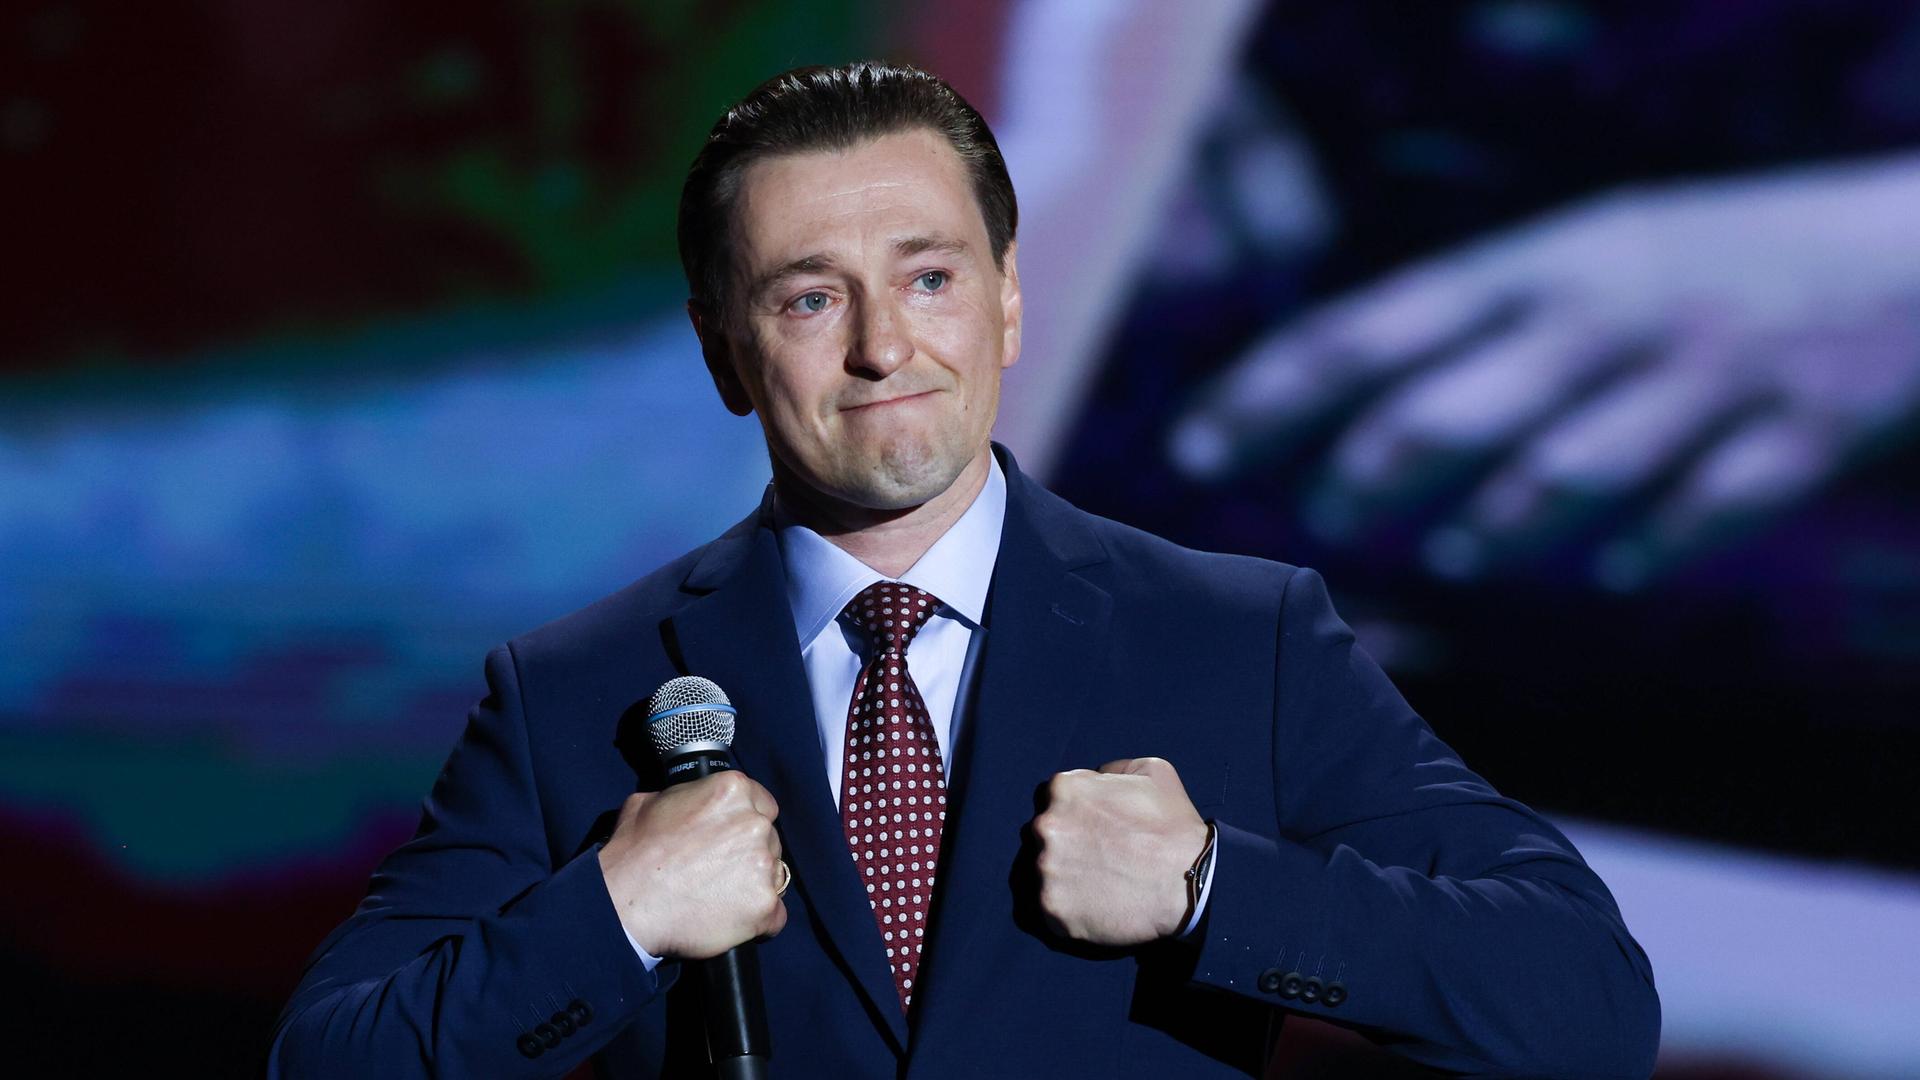 Sergei Besrukow steht mit dem Mikrofon in der Hand auf einer Bühne und macht einen bewegten Gesichtsausdruck.